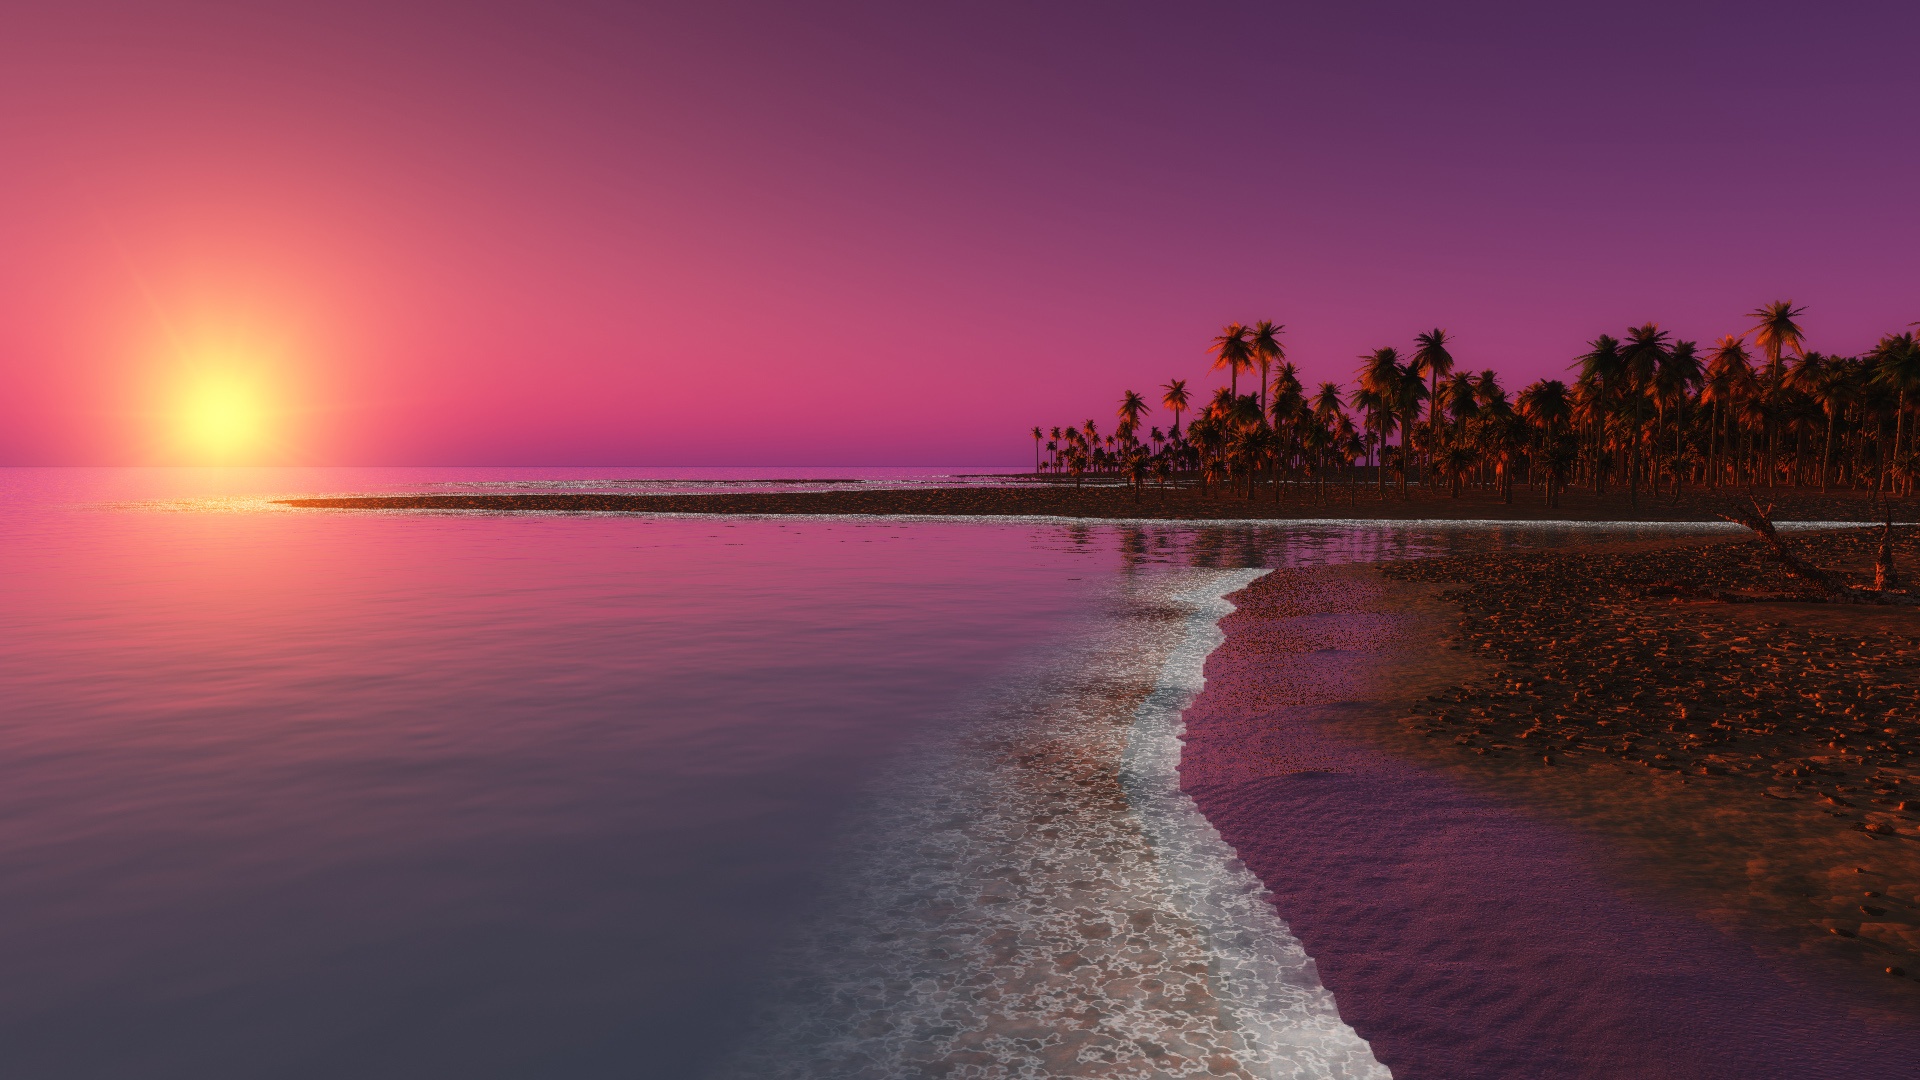 Sunset Image HD Desktop Background For Wallpaper